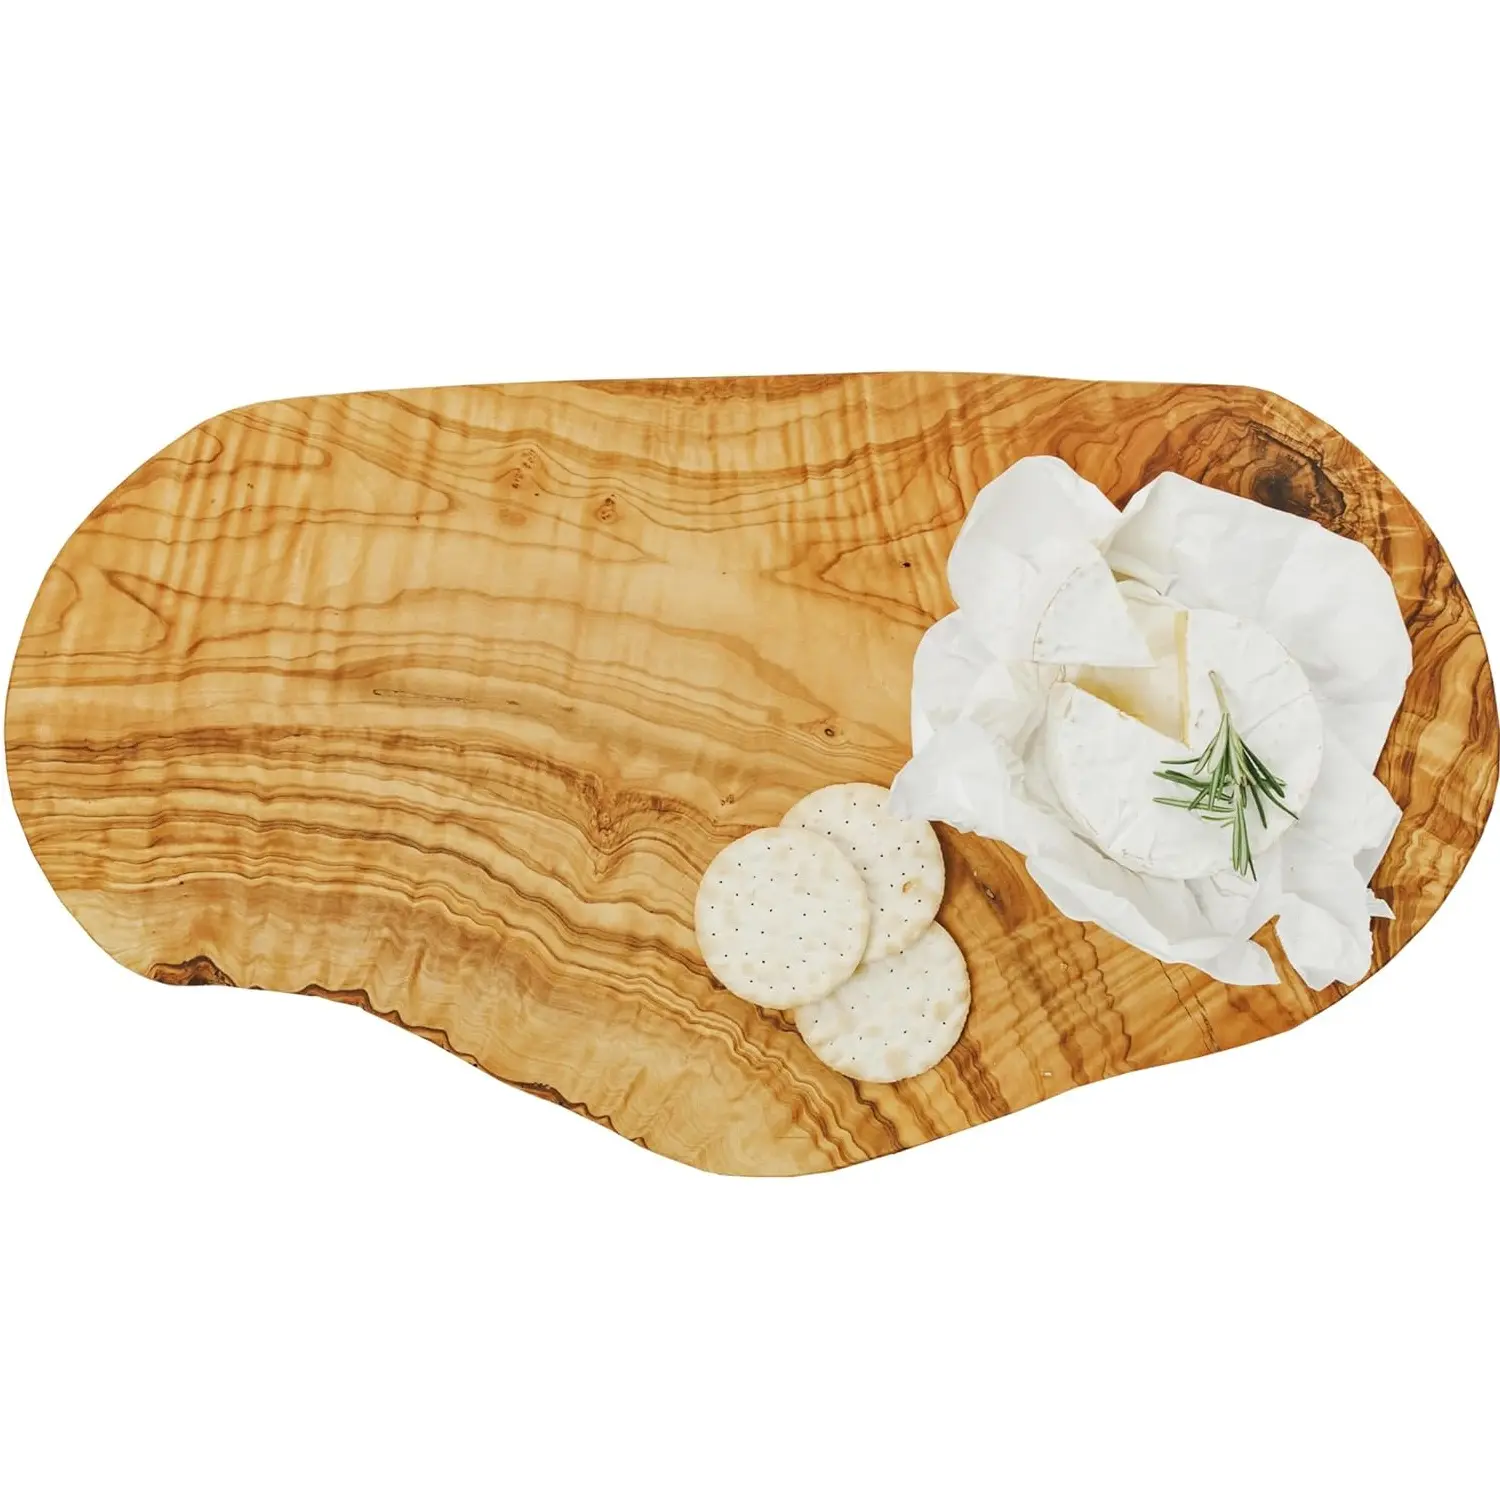 Siêu mịn và sang trọng chất lượng bằng gỗ pho mát ban đồ dùng nhà bếp hàng đầu thiết kế Rau cắt Board cho nhà bếp